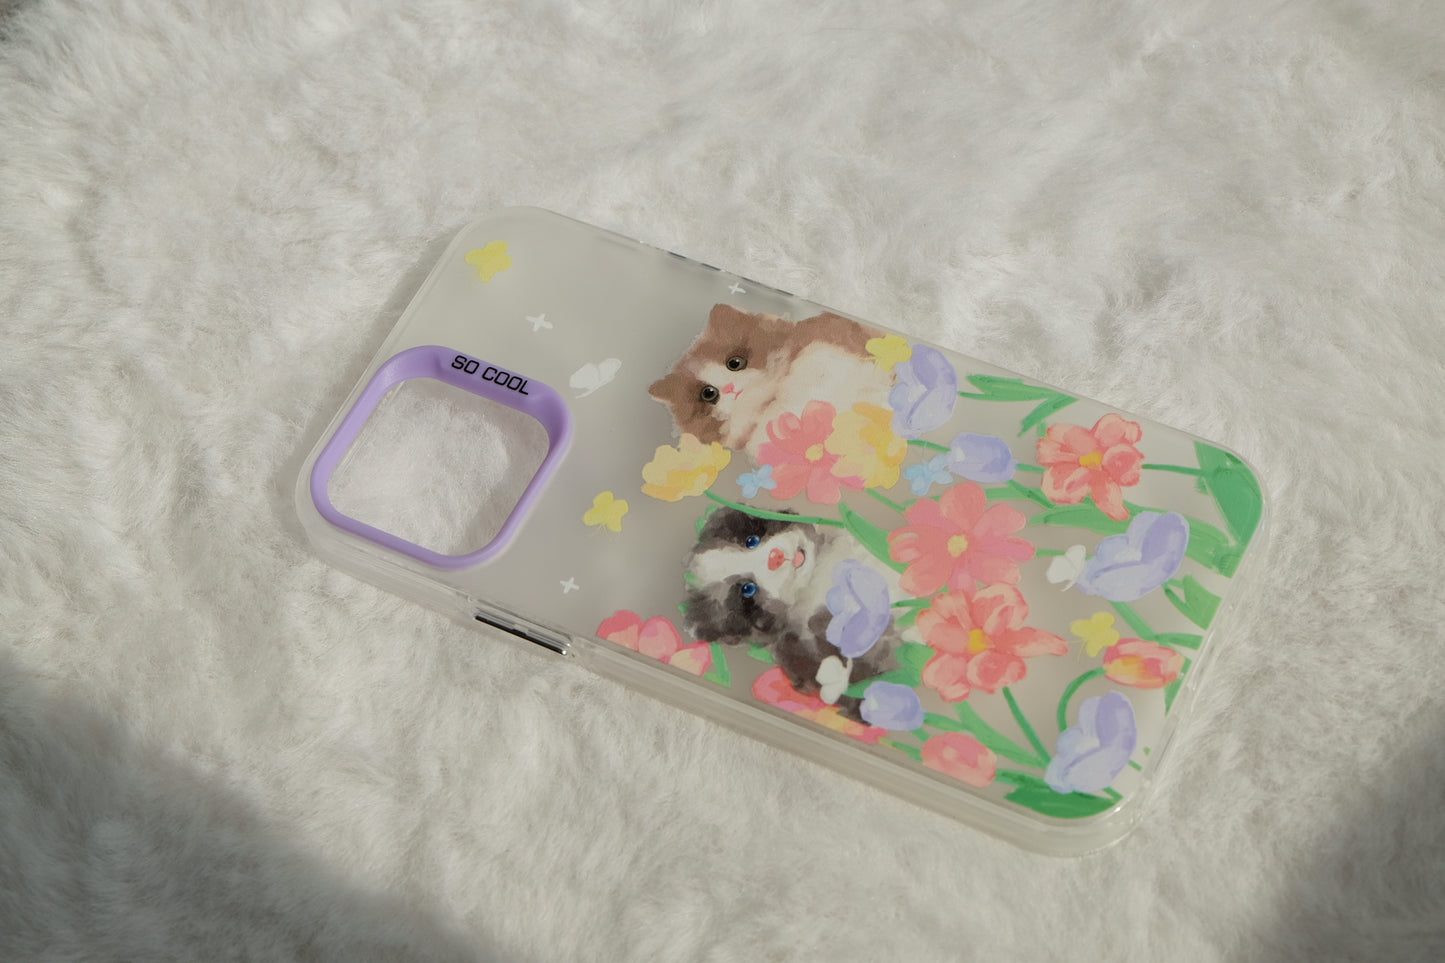 Flowery Kitten Puppy phone case | phone accessories | Three Fleas